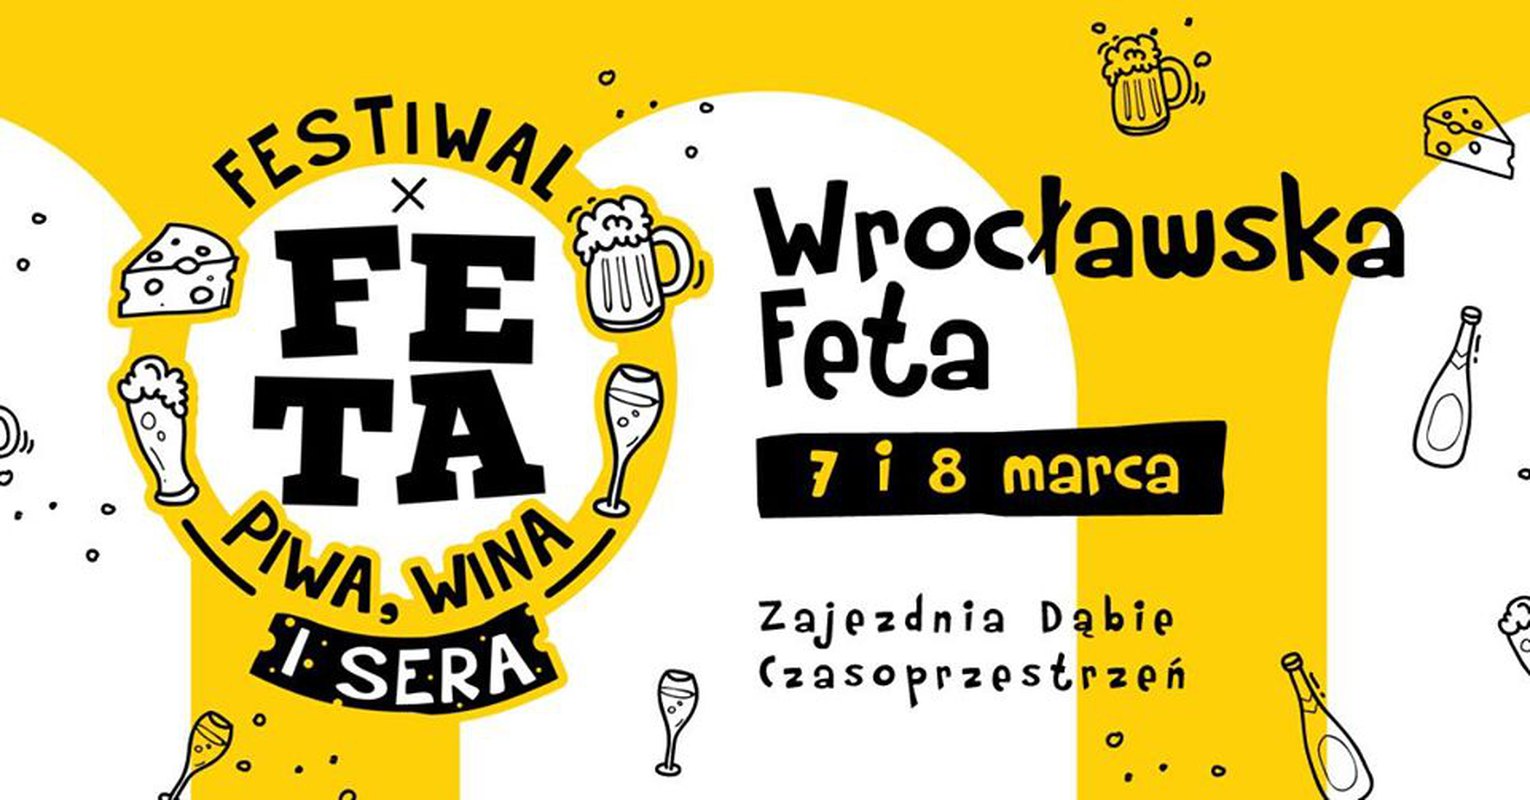 Wrocławska Feta. Festiwal Piwa, Wina i Sera - II Edycja